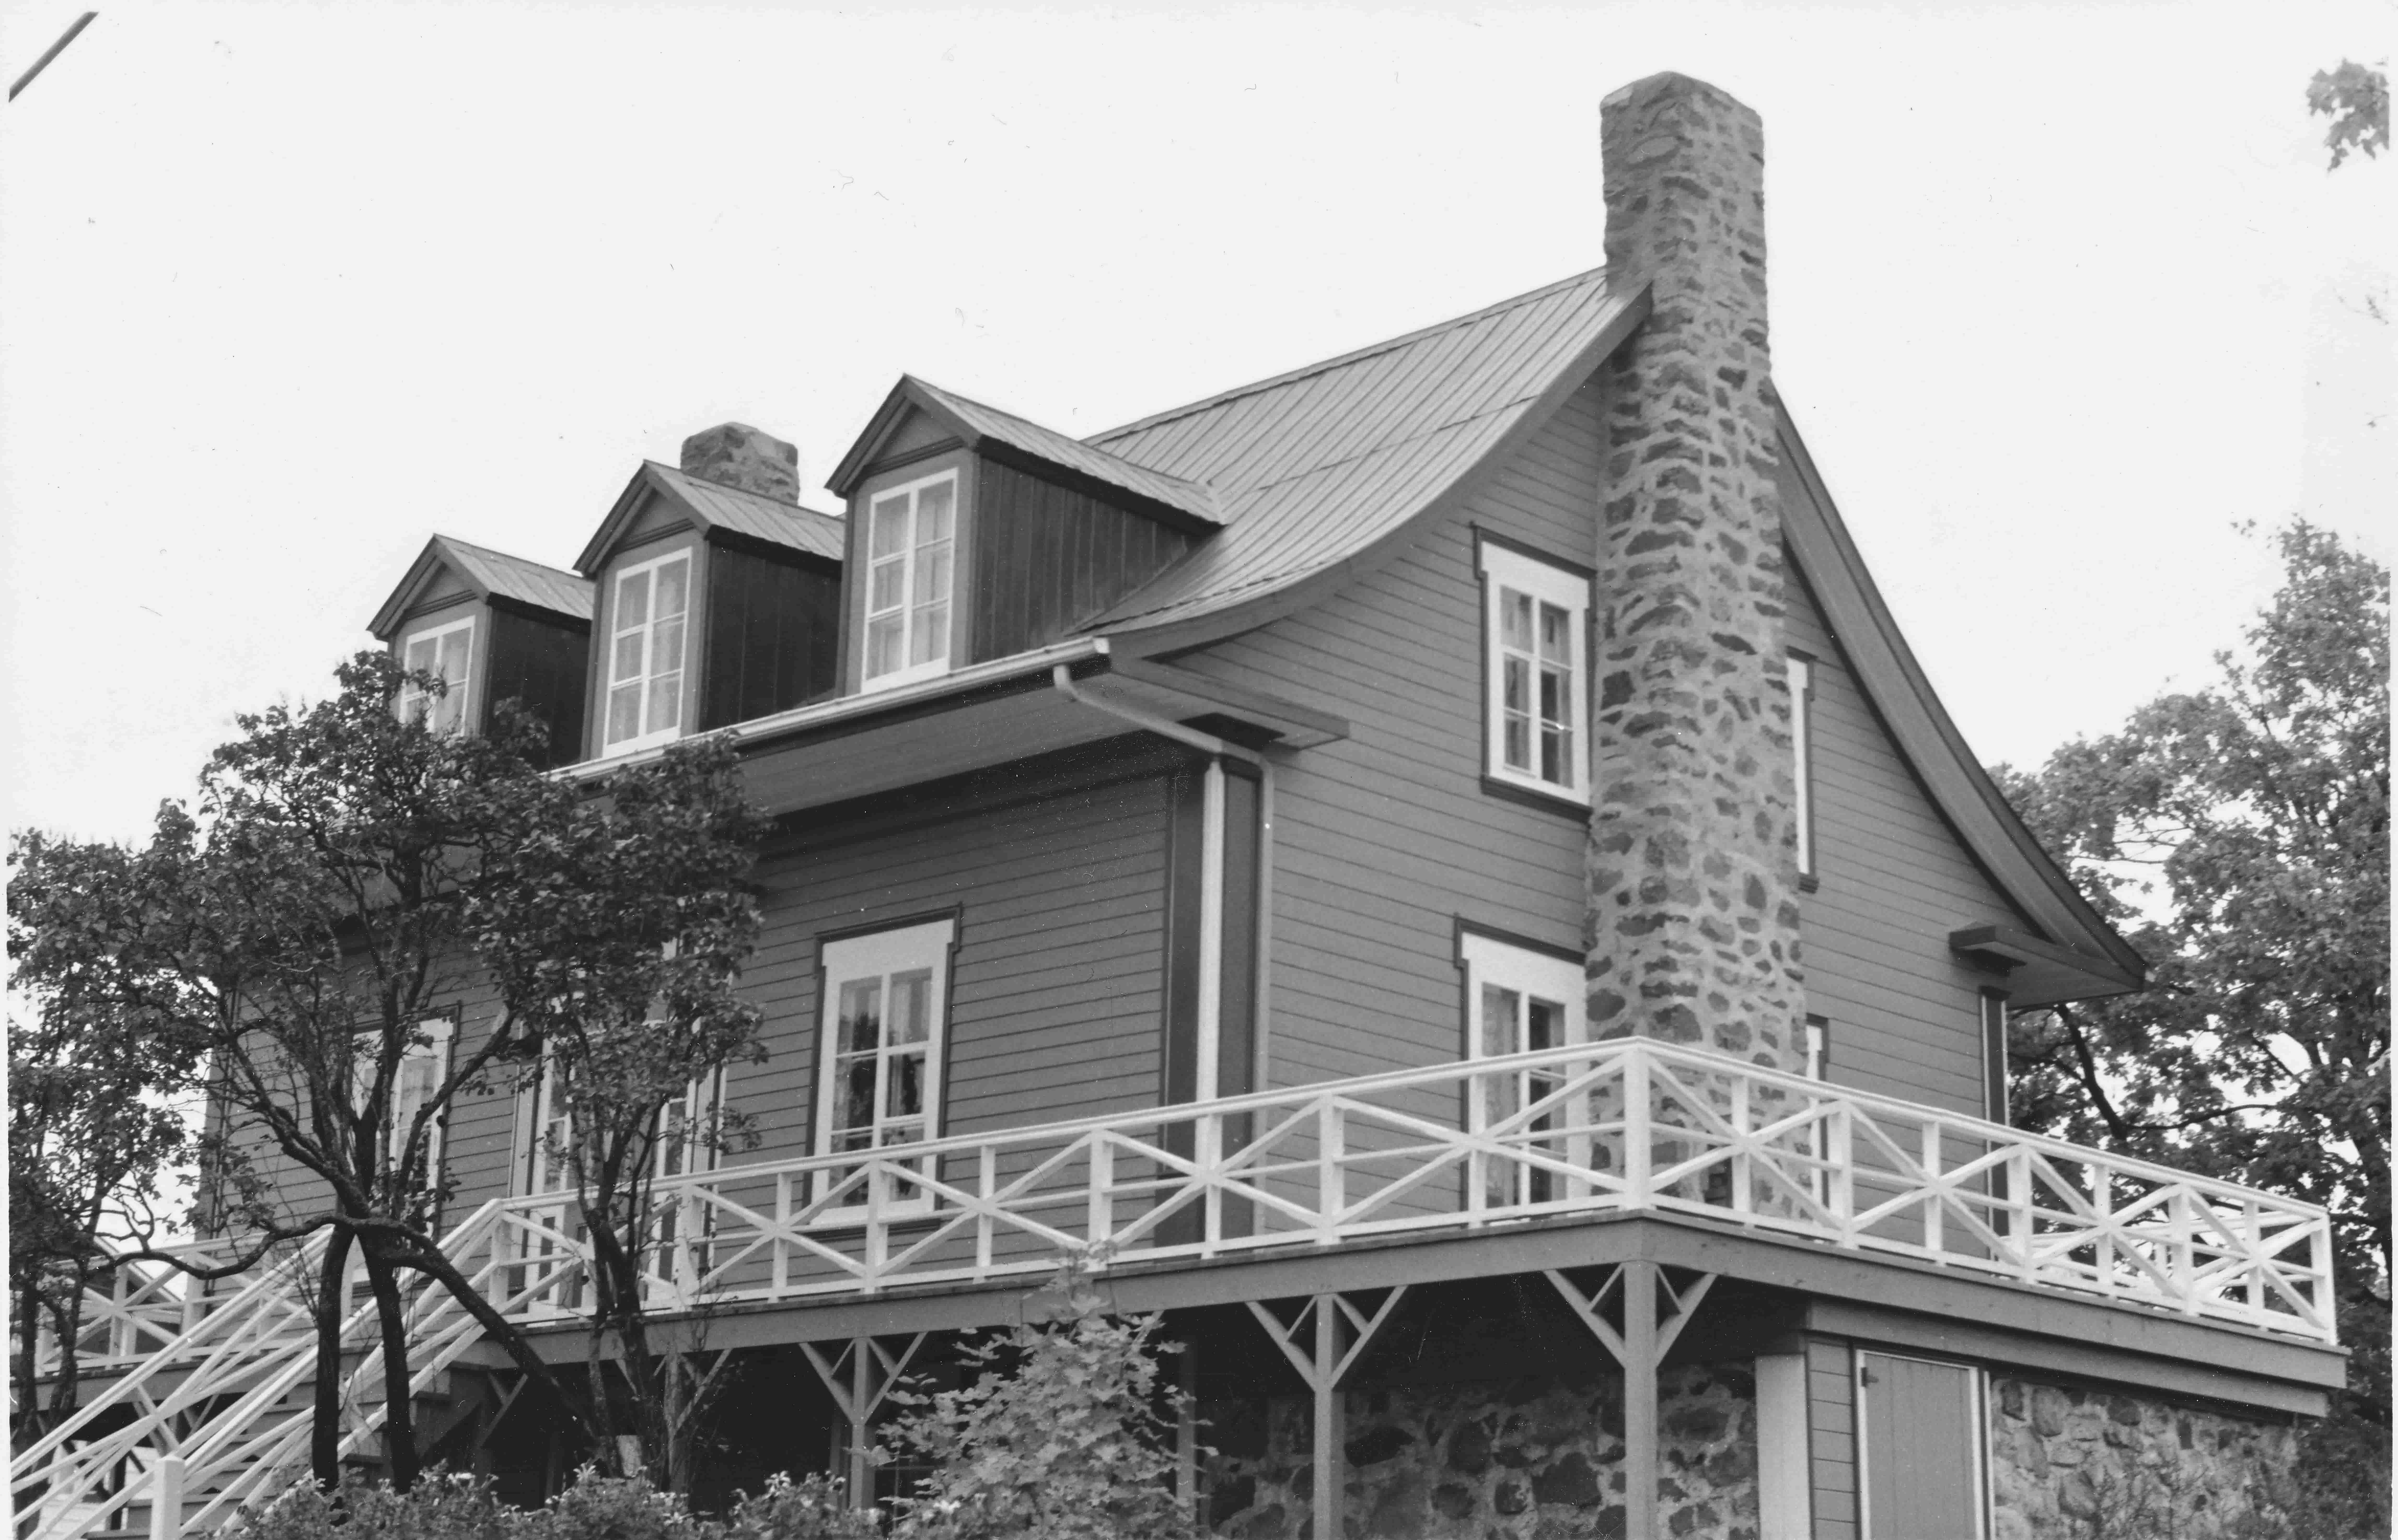 Solide maison québécoise ancienne, avec cheminée de pierre, toit en tôle et murs de planches horizontales en bois.